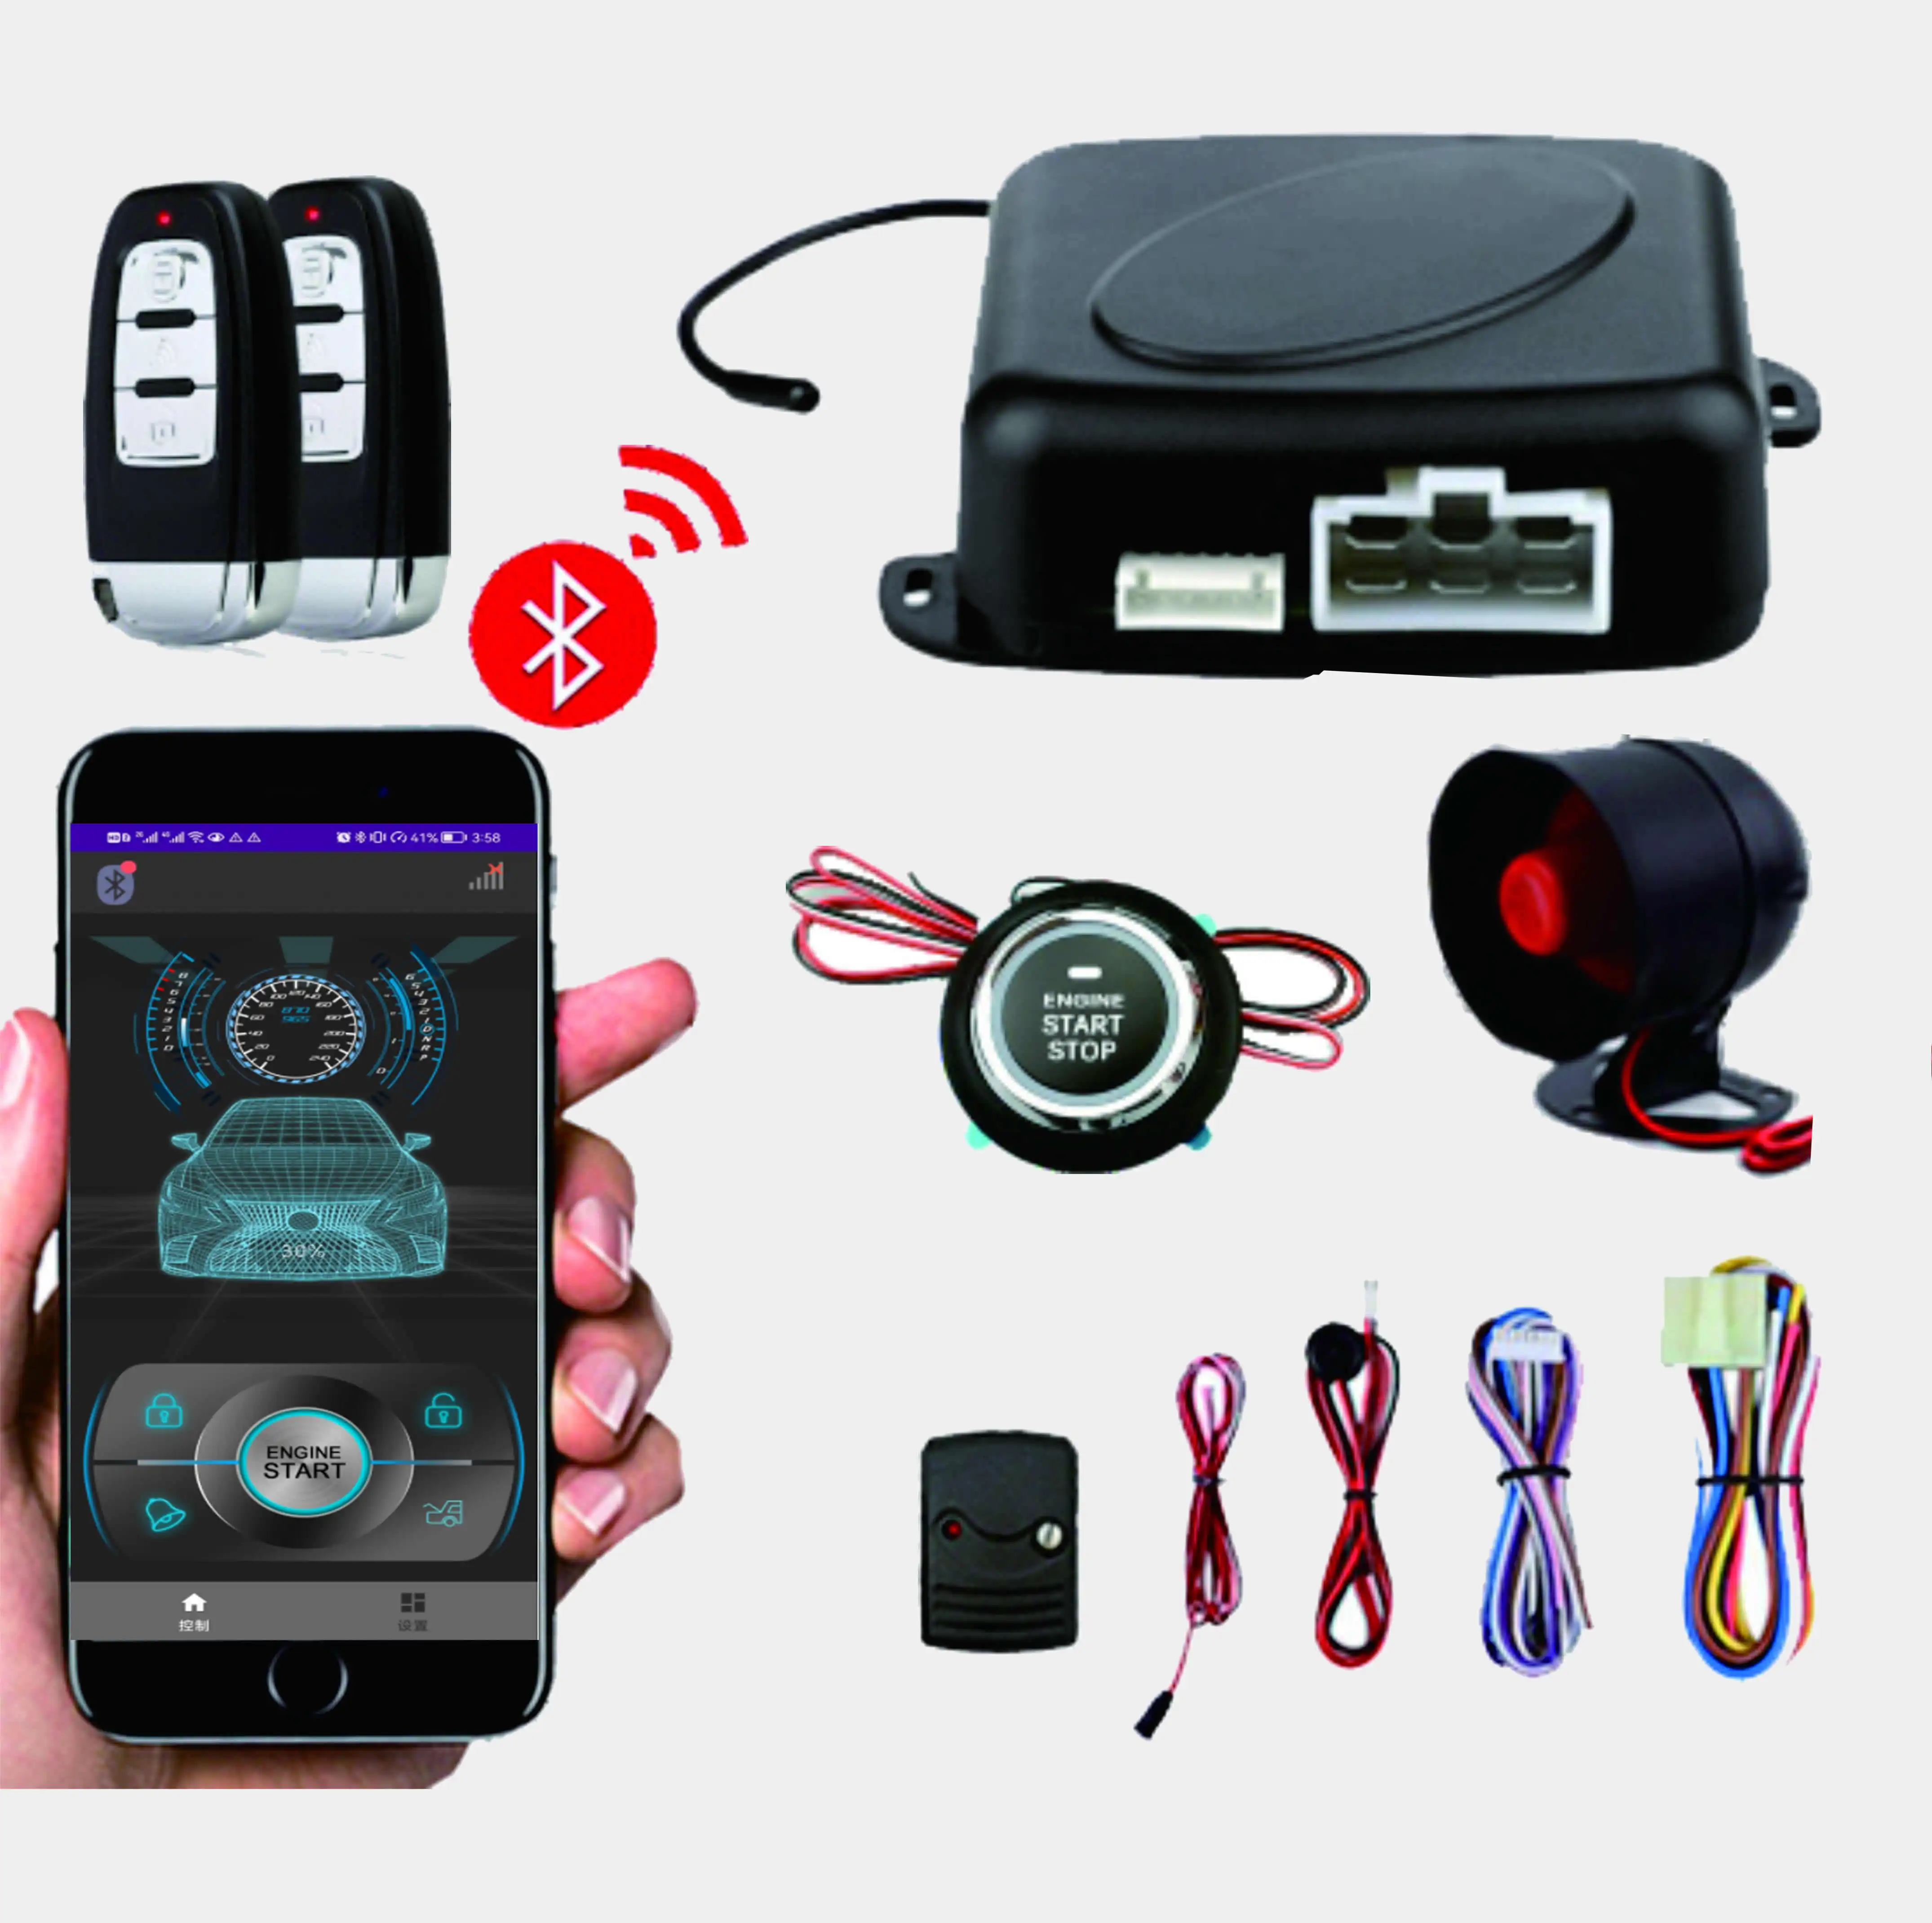 Sistema de alarme de carro com partida remota, controle de aplicativo de telefone pequeno, sistema de alarme de carro com partida remota